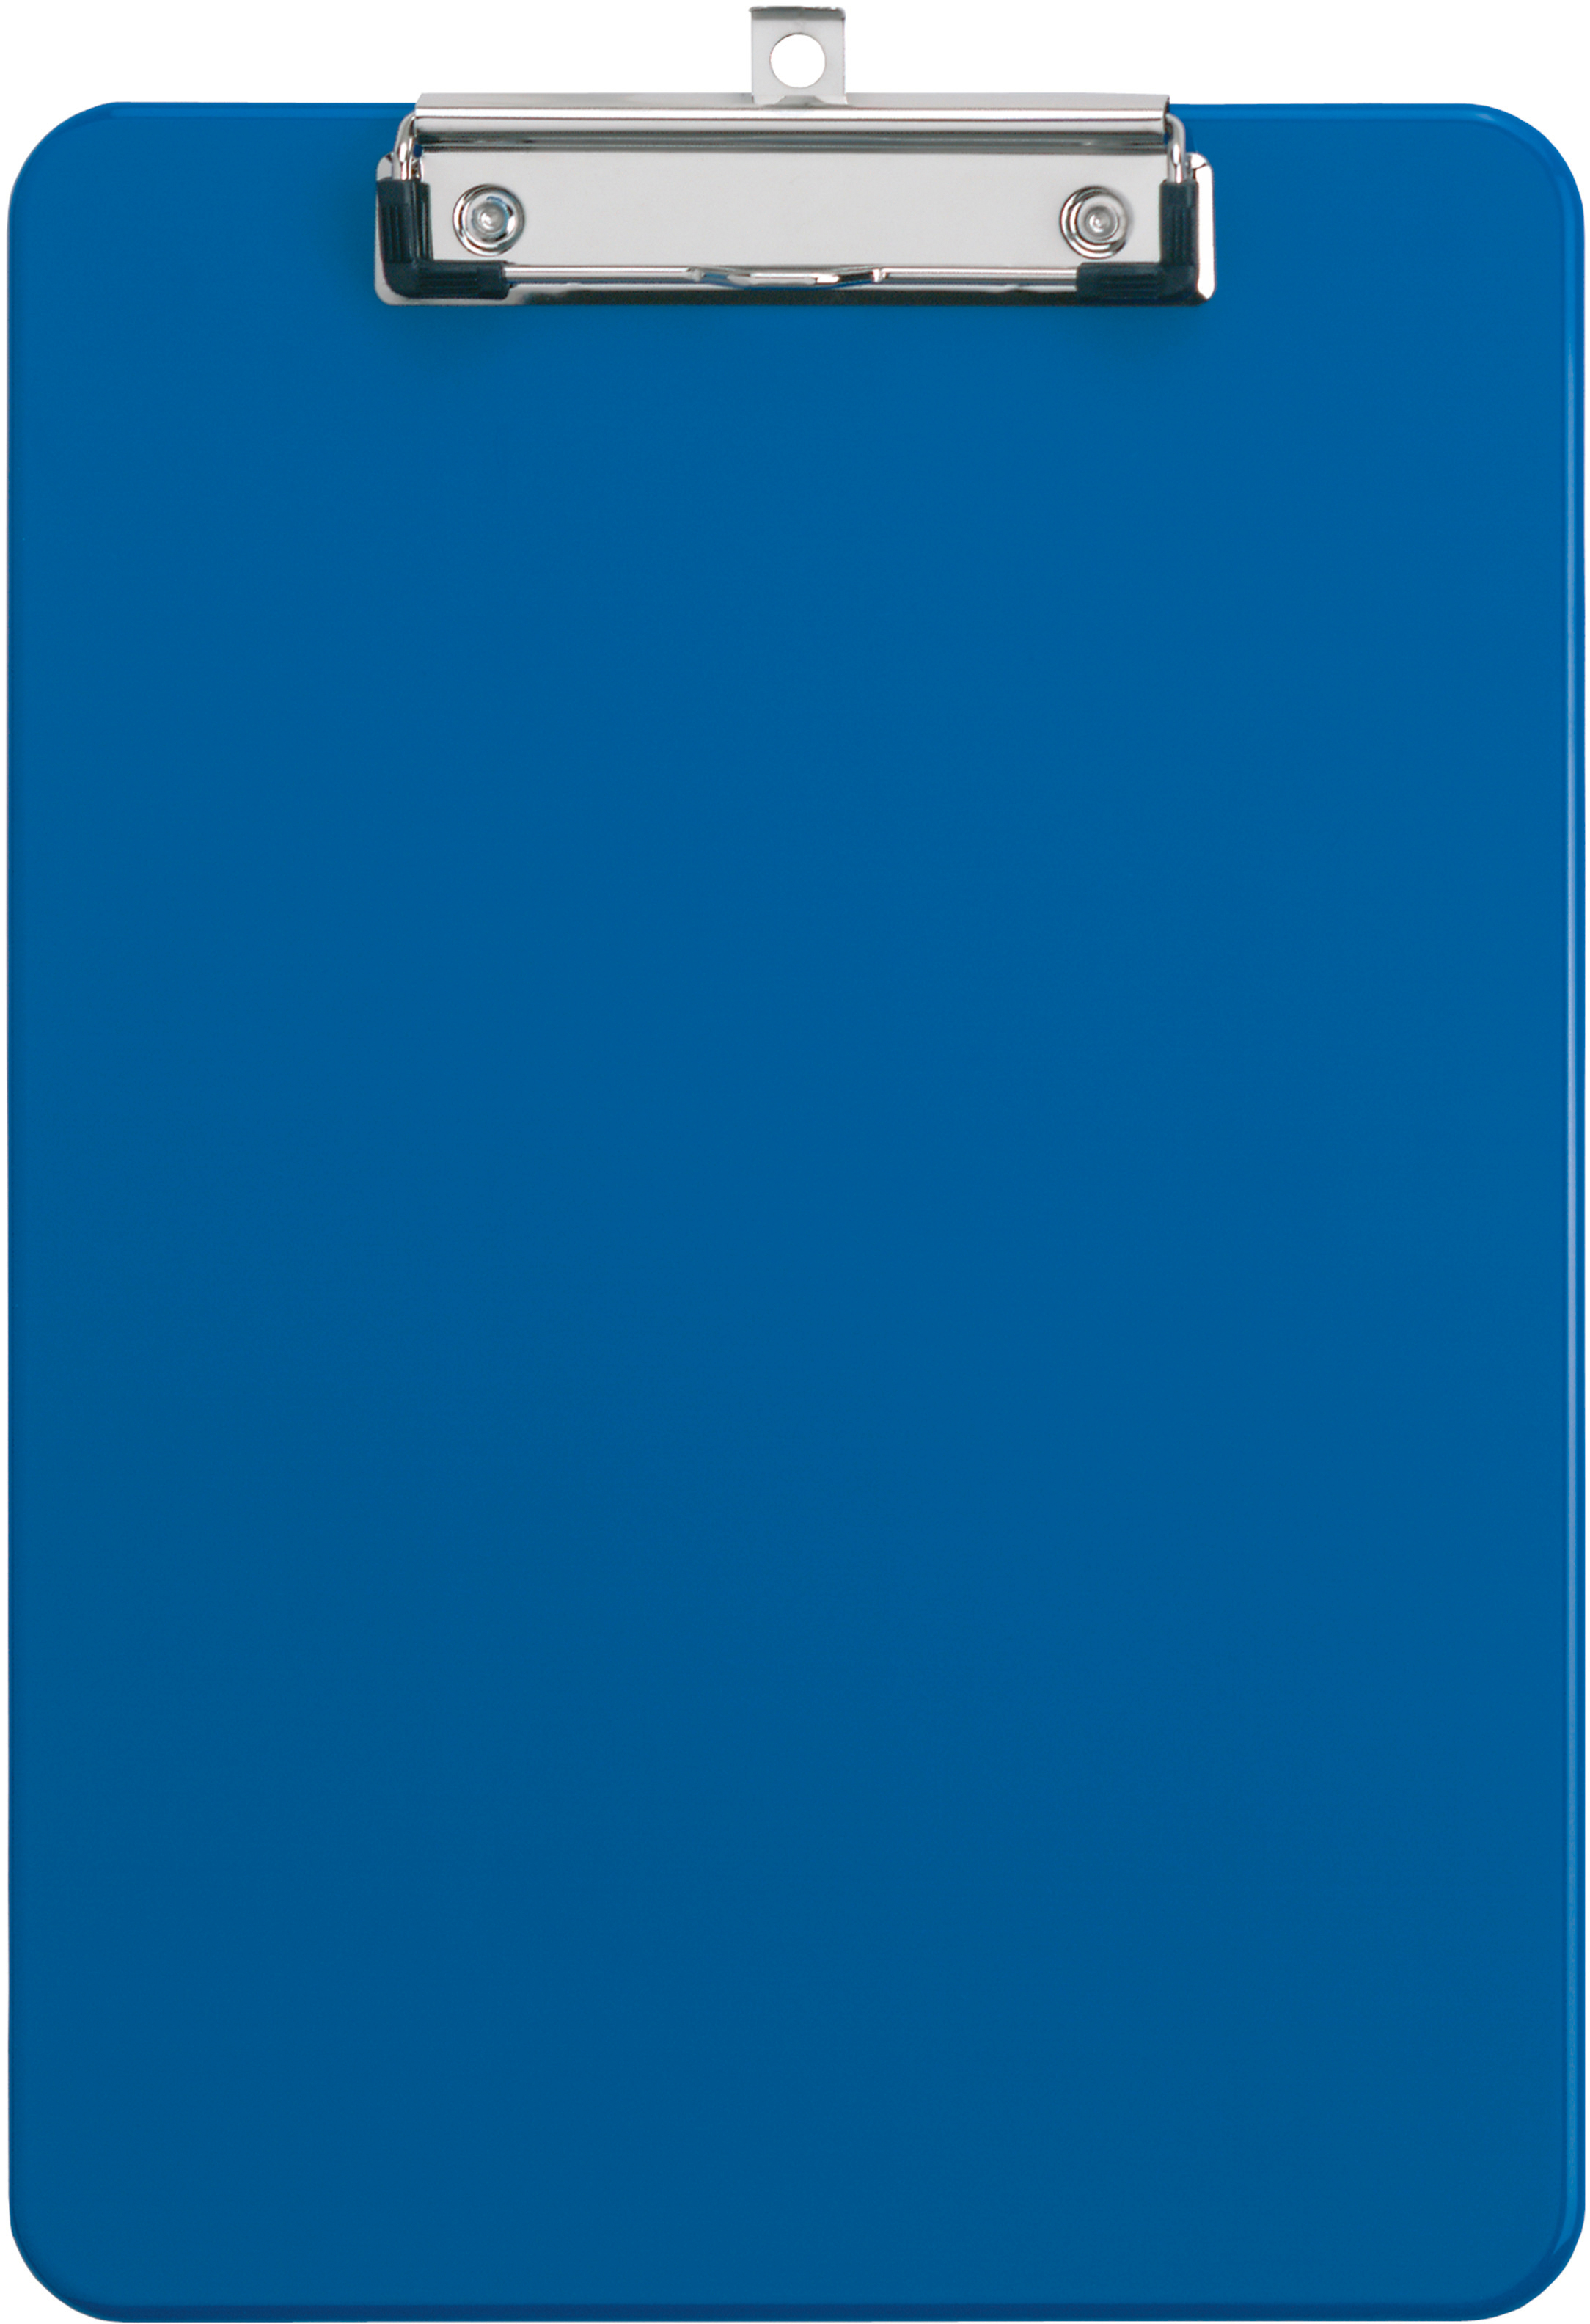 MAUL Sous-main PP A4 2340537 avec clip, bleu